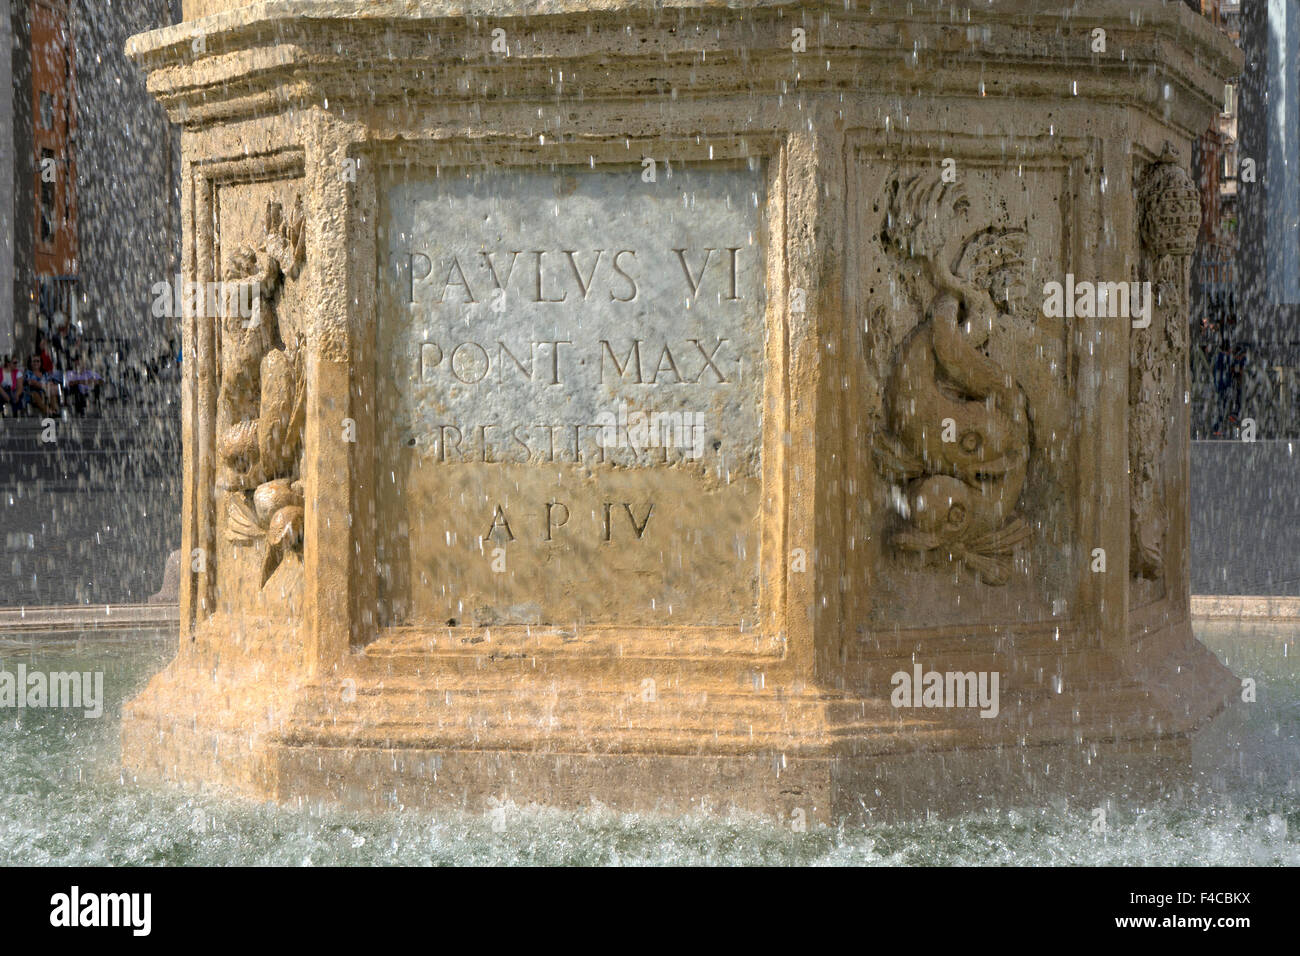 Maderno fontana fuori dal Vaticano, Roma, Italia Foto Stock